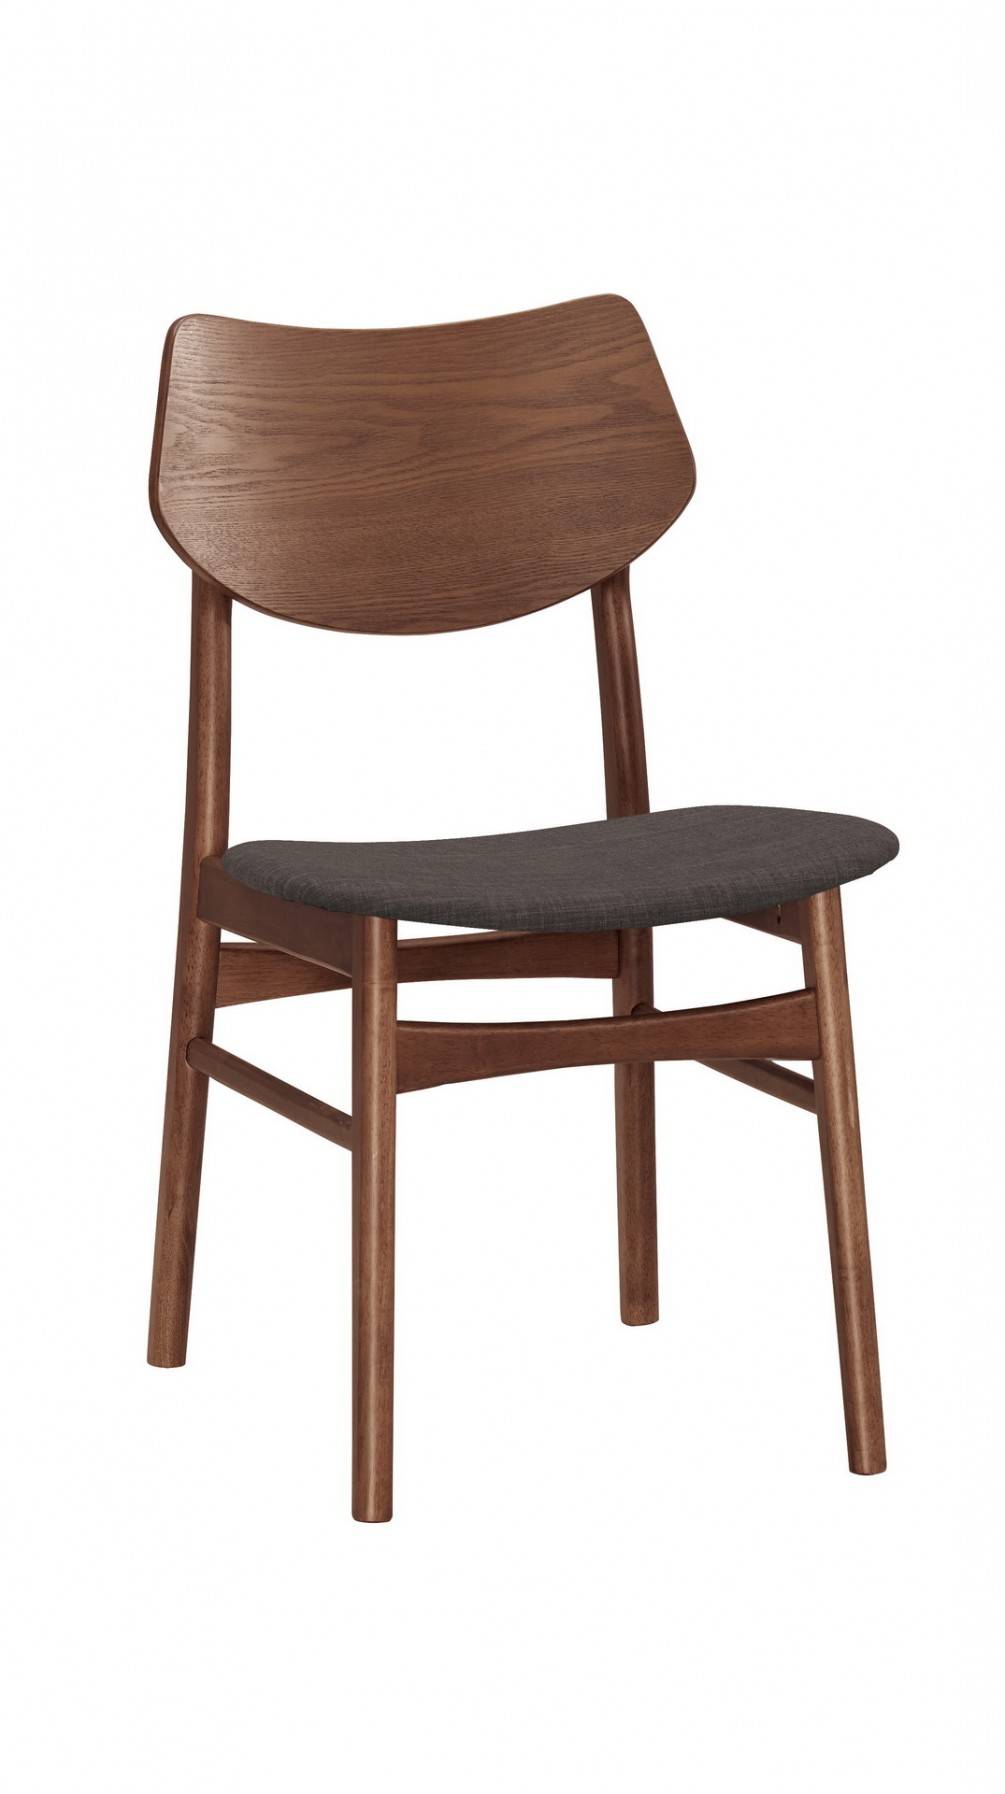 QM-1070-6 特倫德餐椅(布)(實木) (不含其他產品)<br /> 尺寸:寬49*深53*高83.5cm